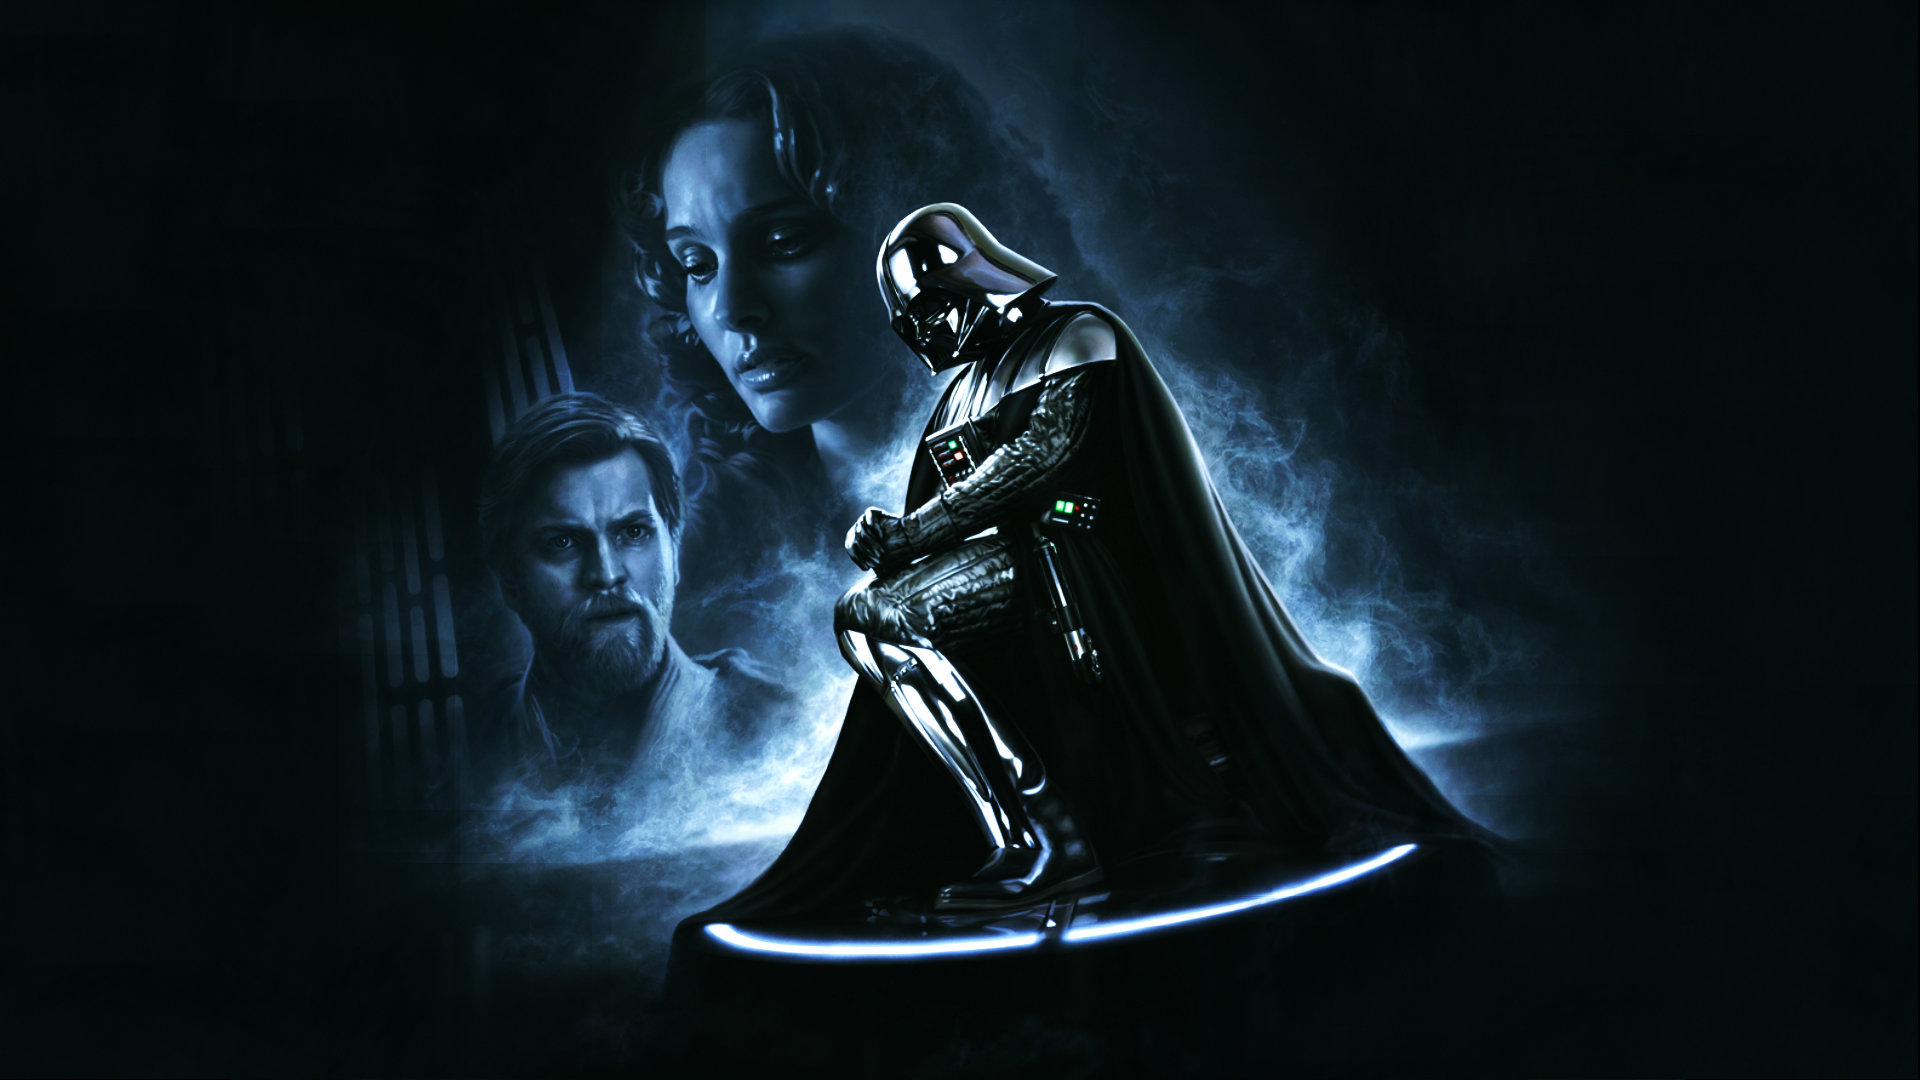 High resolution Darth Vader hd 1920x1080 wallpaper ID:458956 for desktop